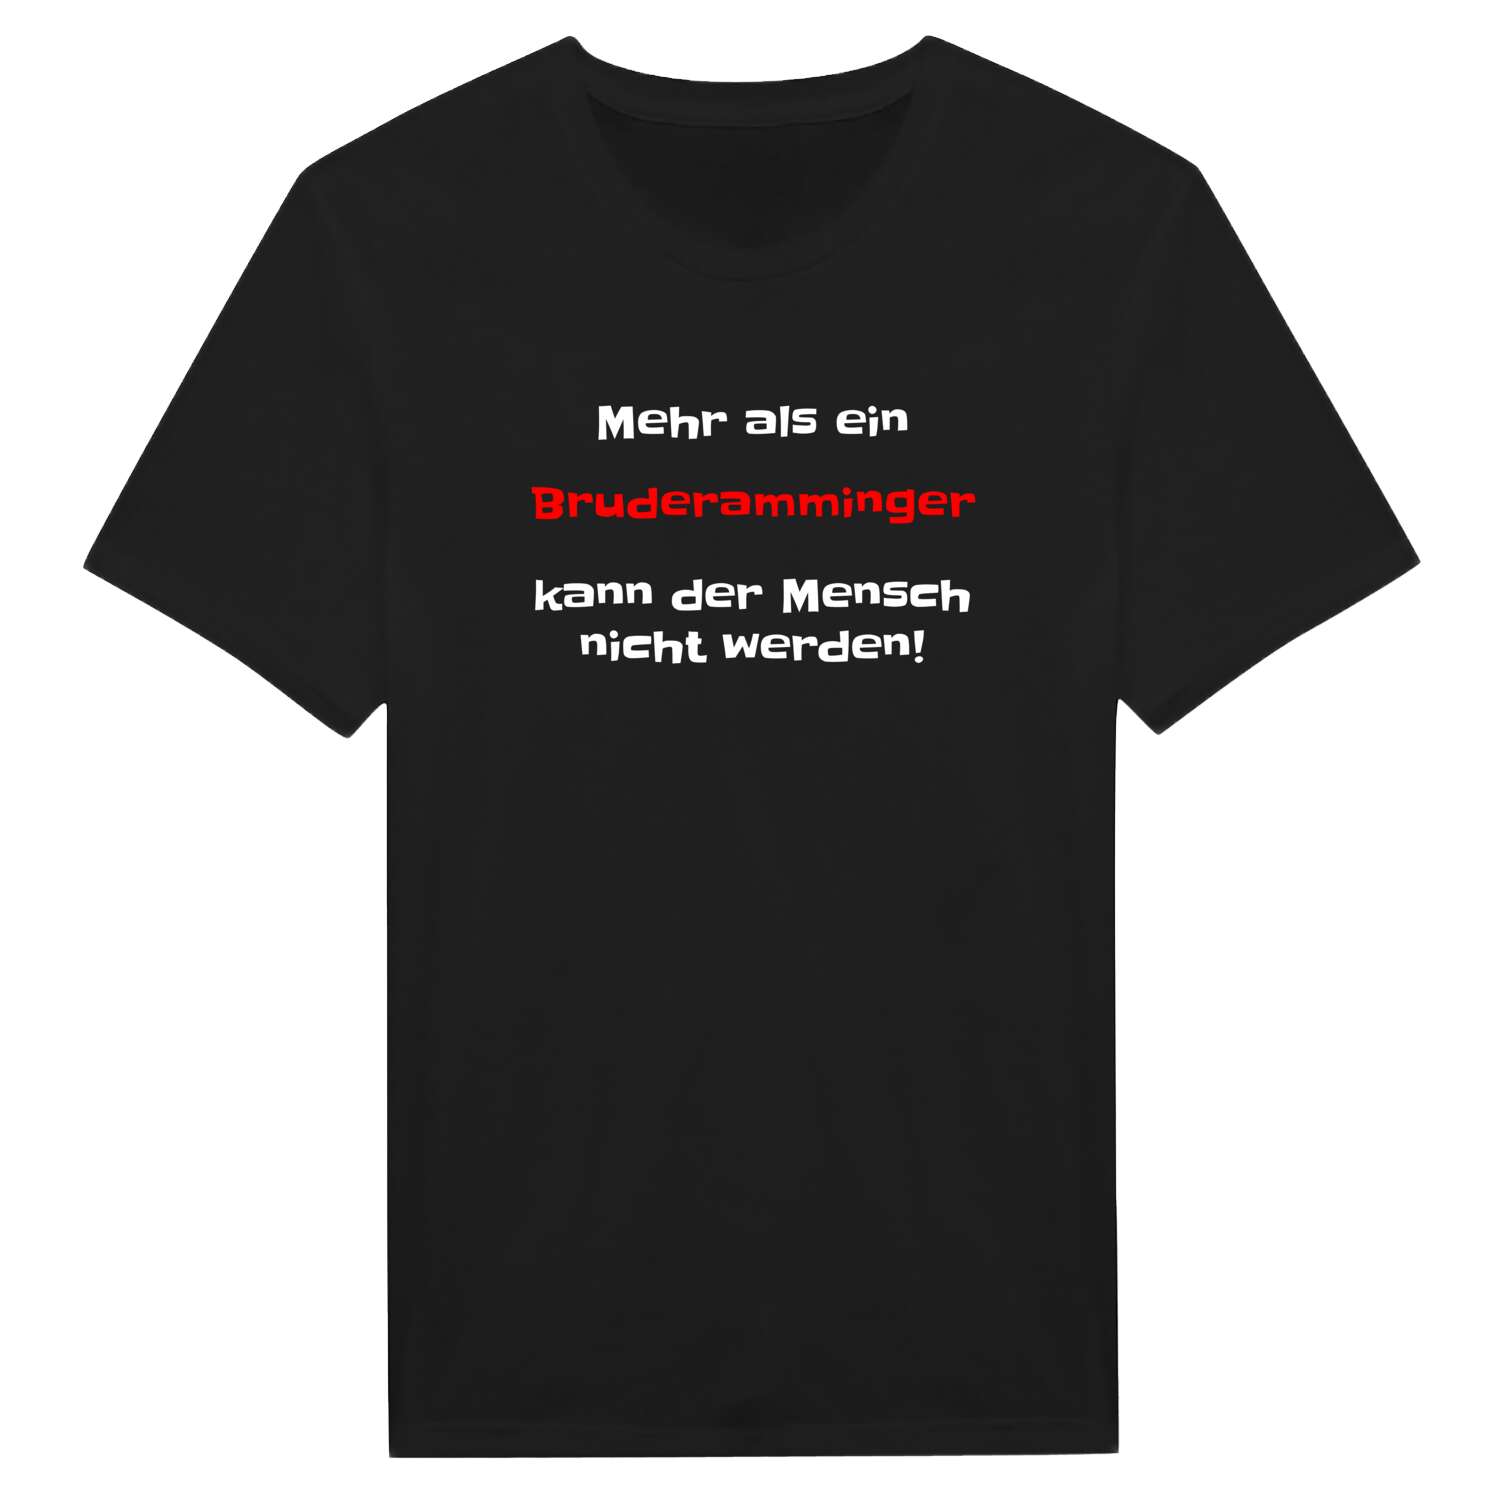 Bruderamming T-Shirt »Mehr als ein«